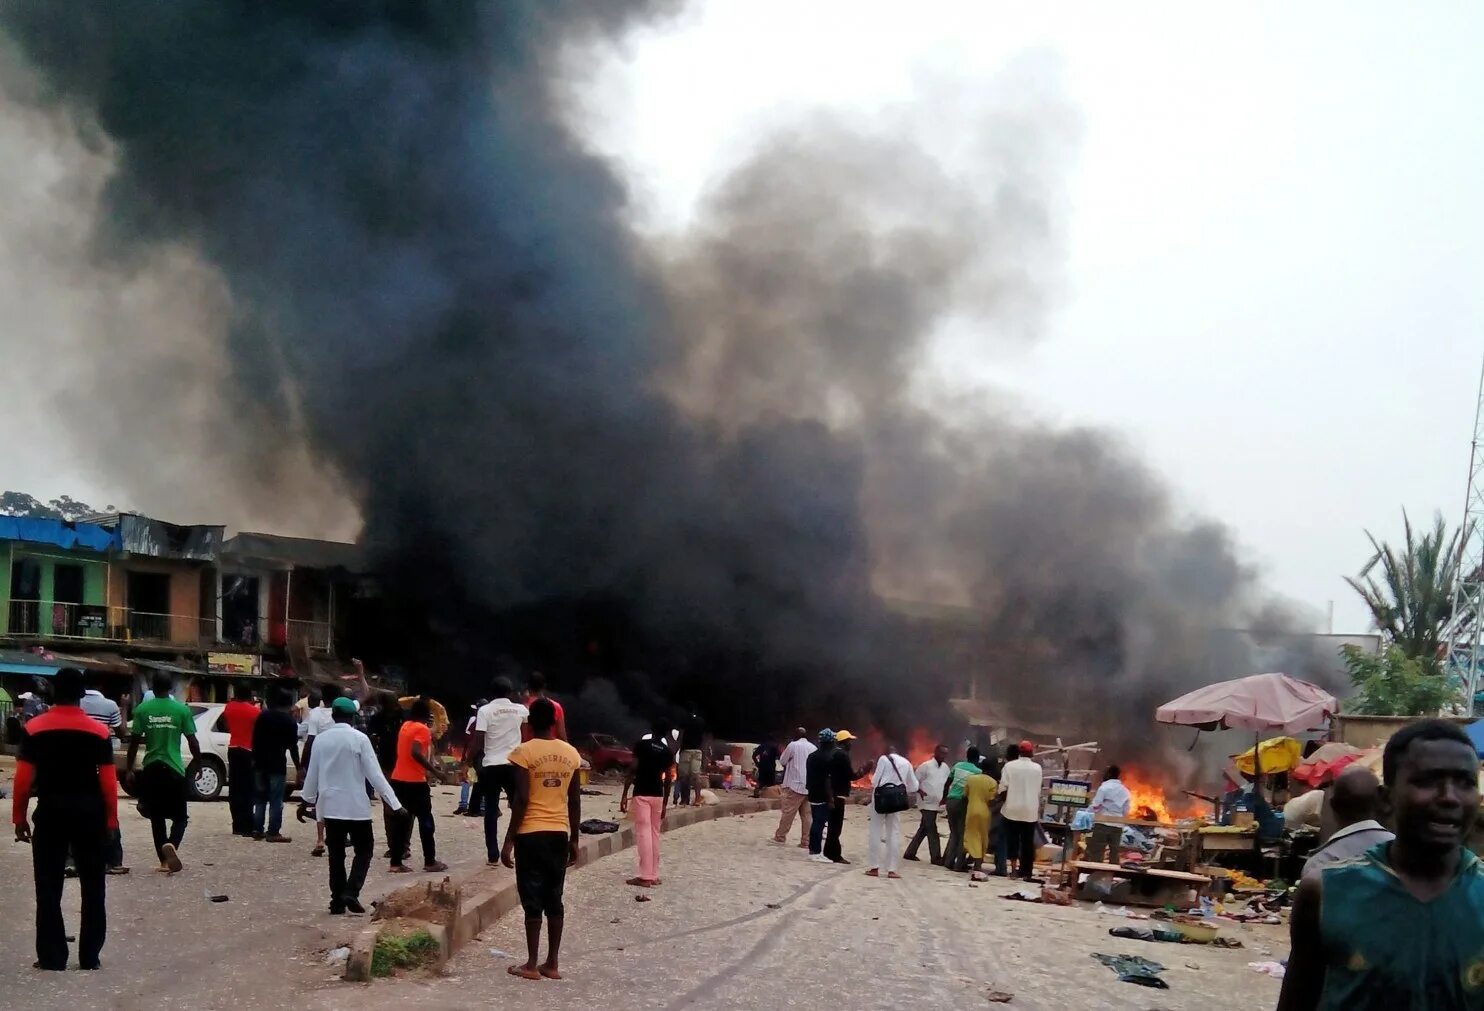 5 мая 2014 г. Атака Боко харам в Нигерии 2014. Атака Боко-харам в Нигерии 5-6 мая 2014. Атака Боко-харам в Нигерии. Более 300 погибших. Атака Боко-харам в Нигерии город Гамбору.